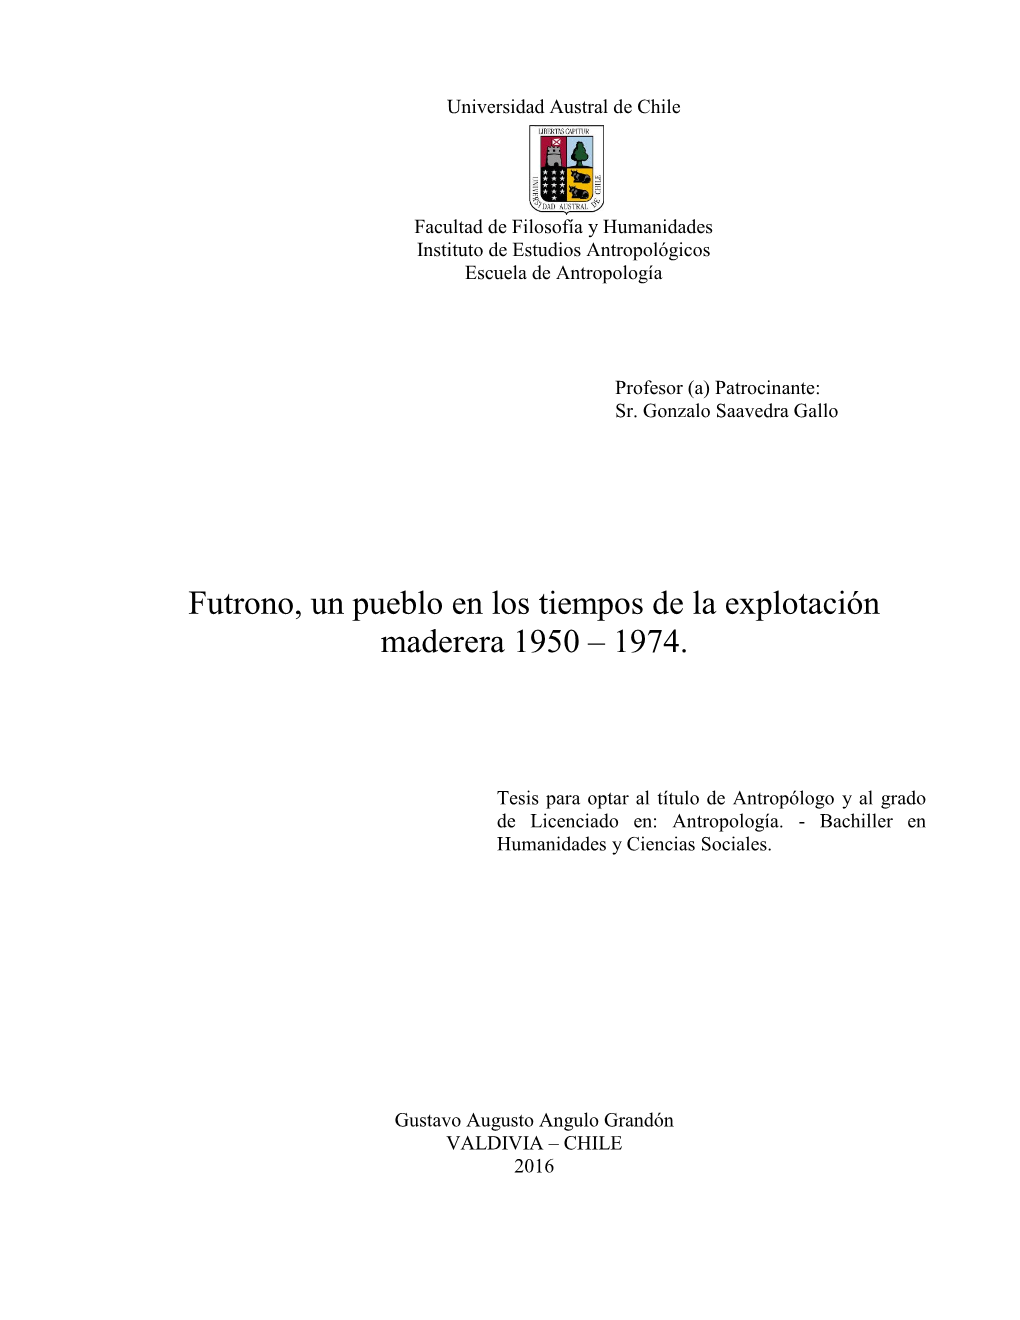 Futrono, Un Pueblo En Los Tiempos De La Explotación Maderera 1950 – 1974